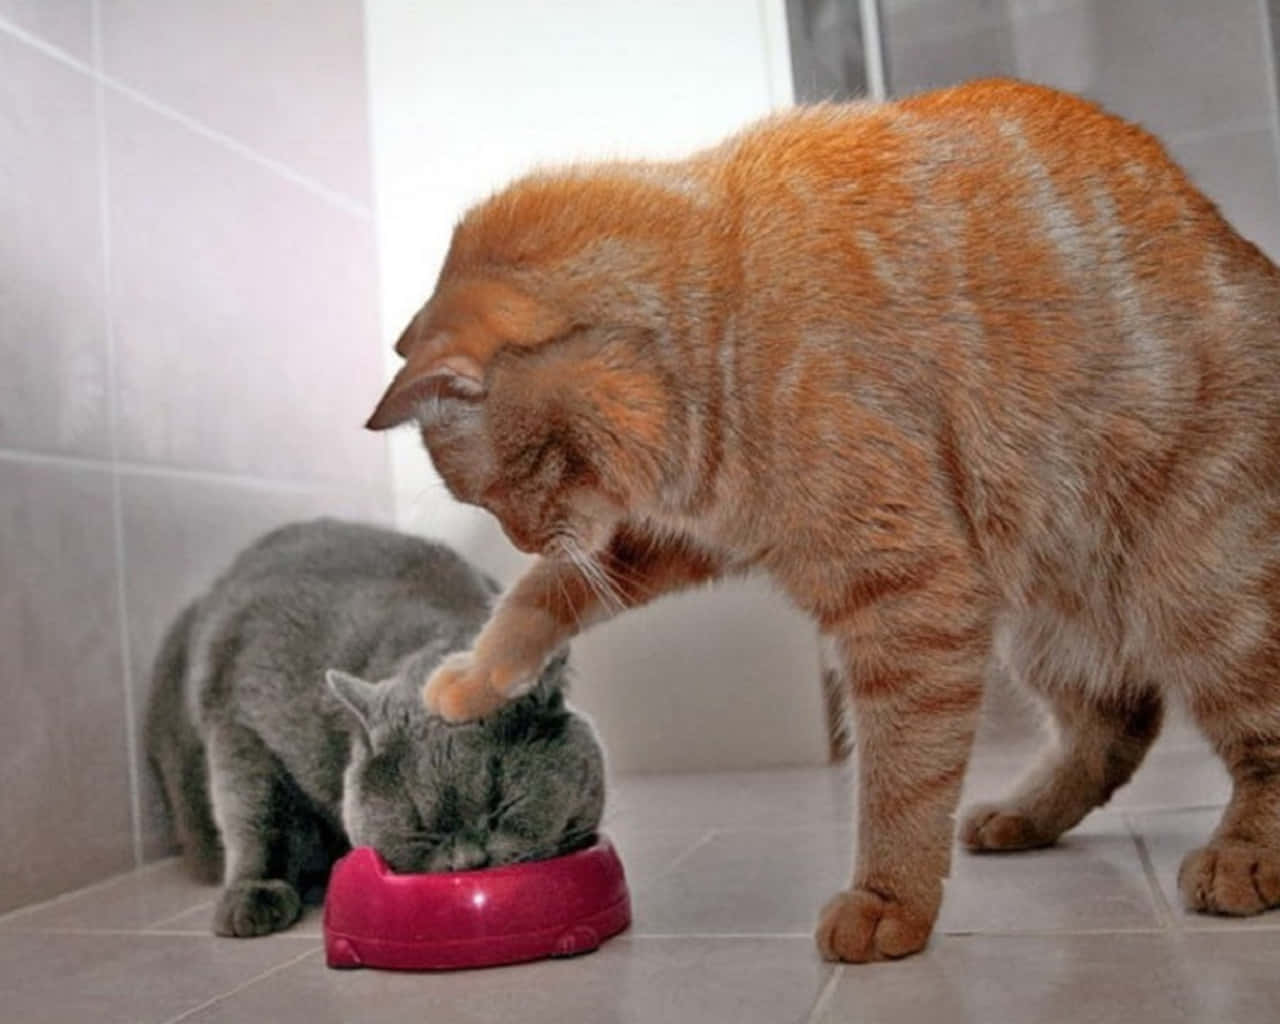 Imagende Un Gato Gris Y Naranja Jugando Y Comiendo